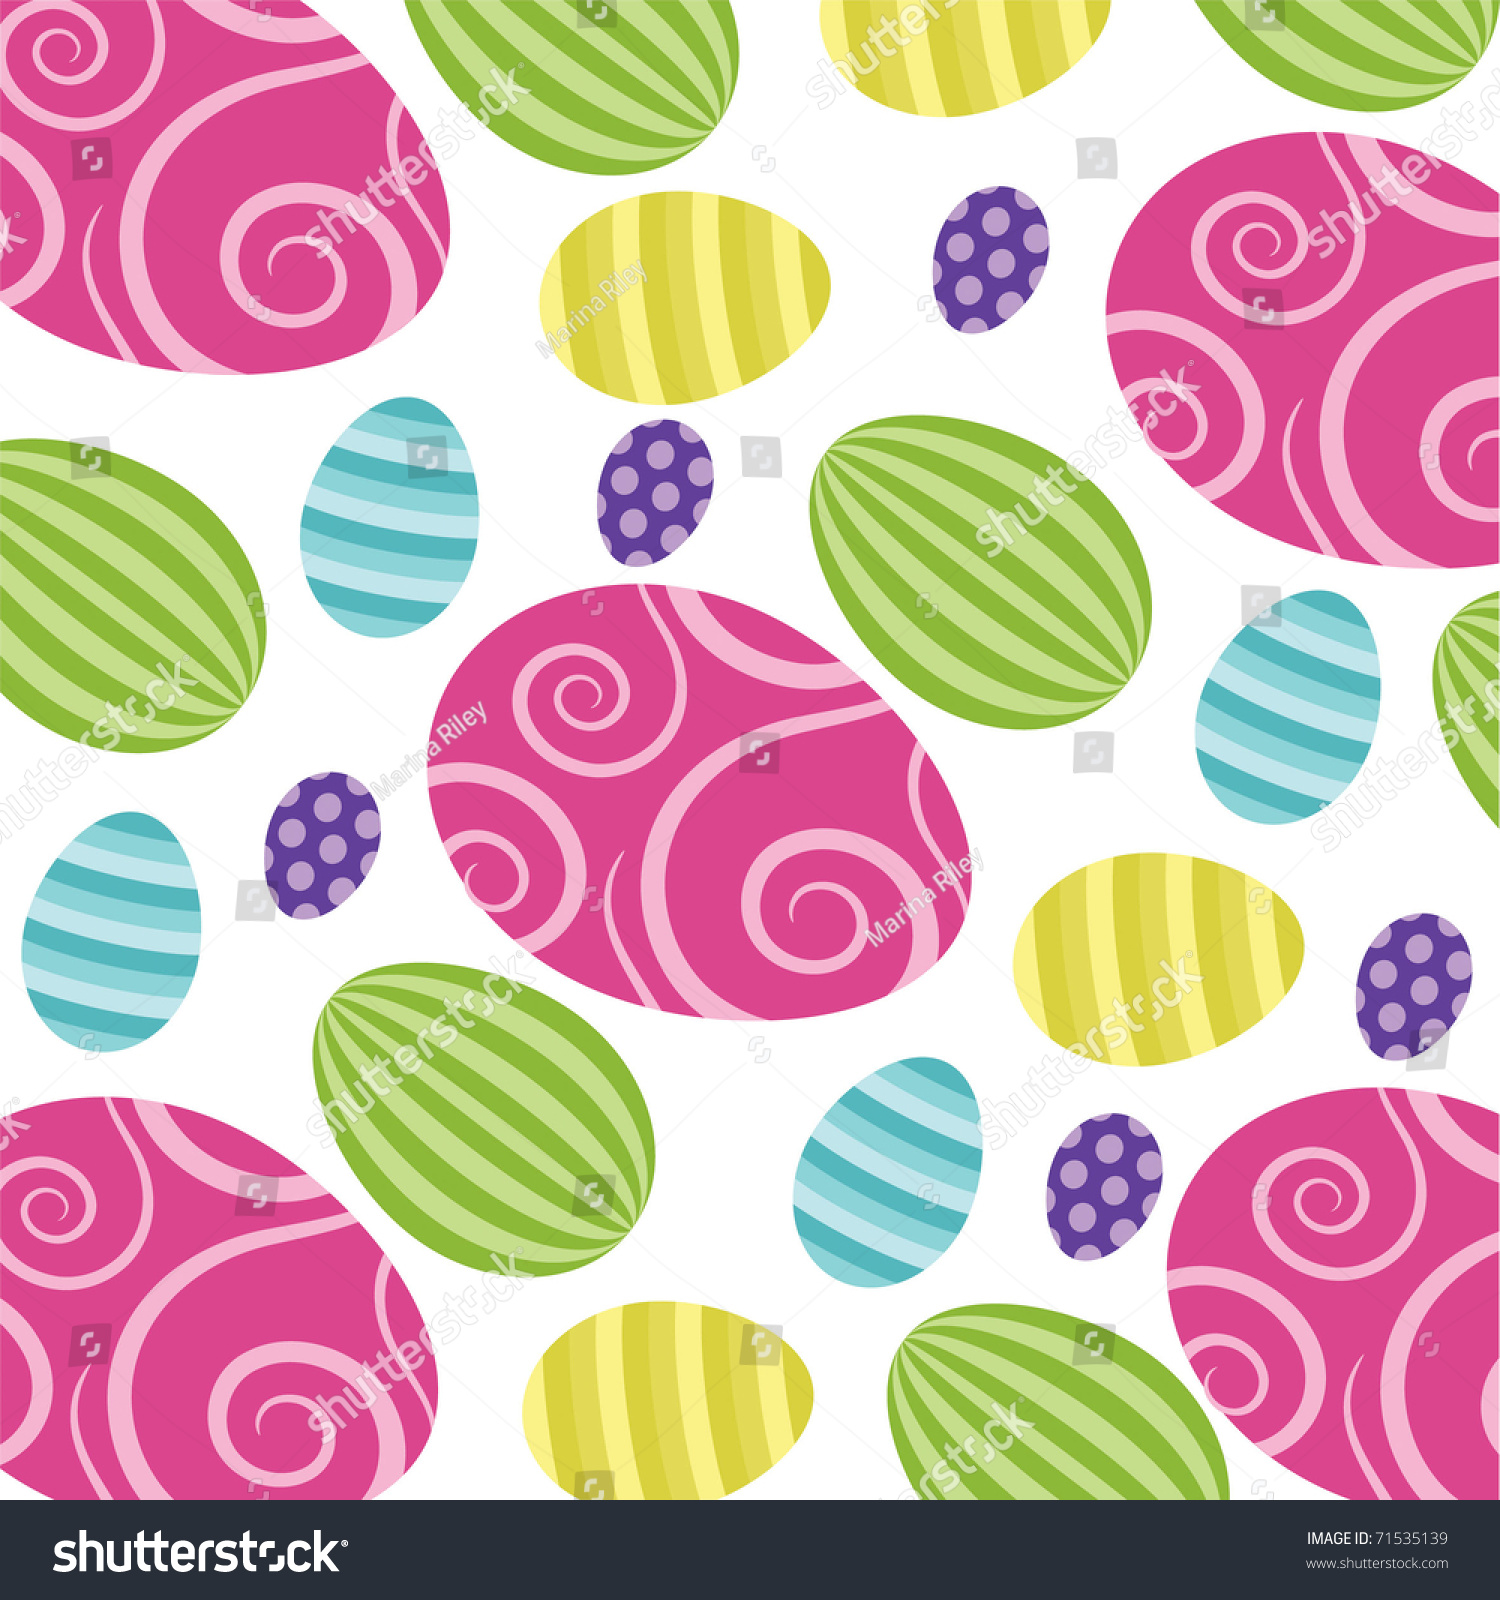 Easter Egg Vector Backgrounds! - 71535139 : Shutterstock